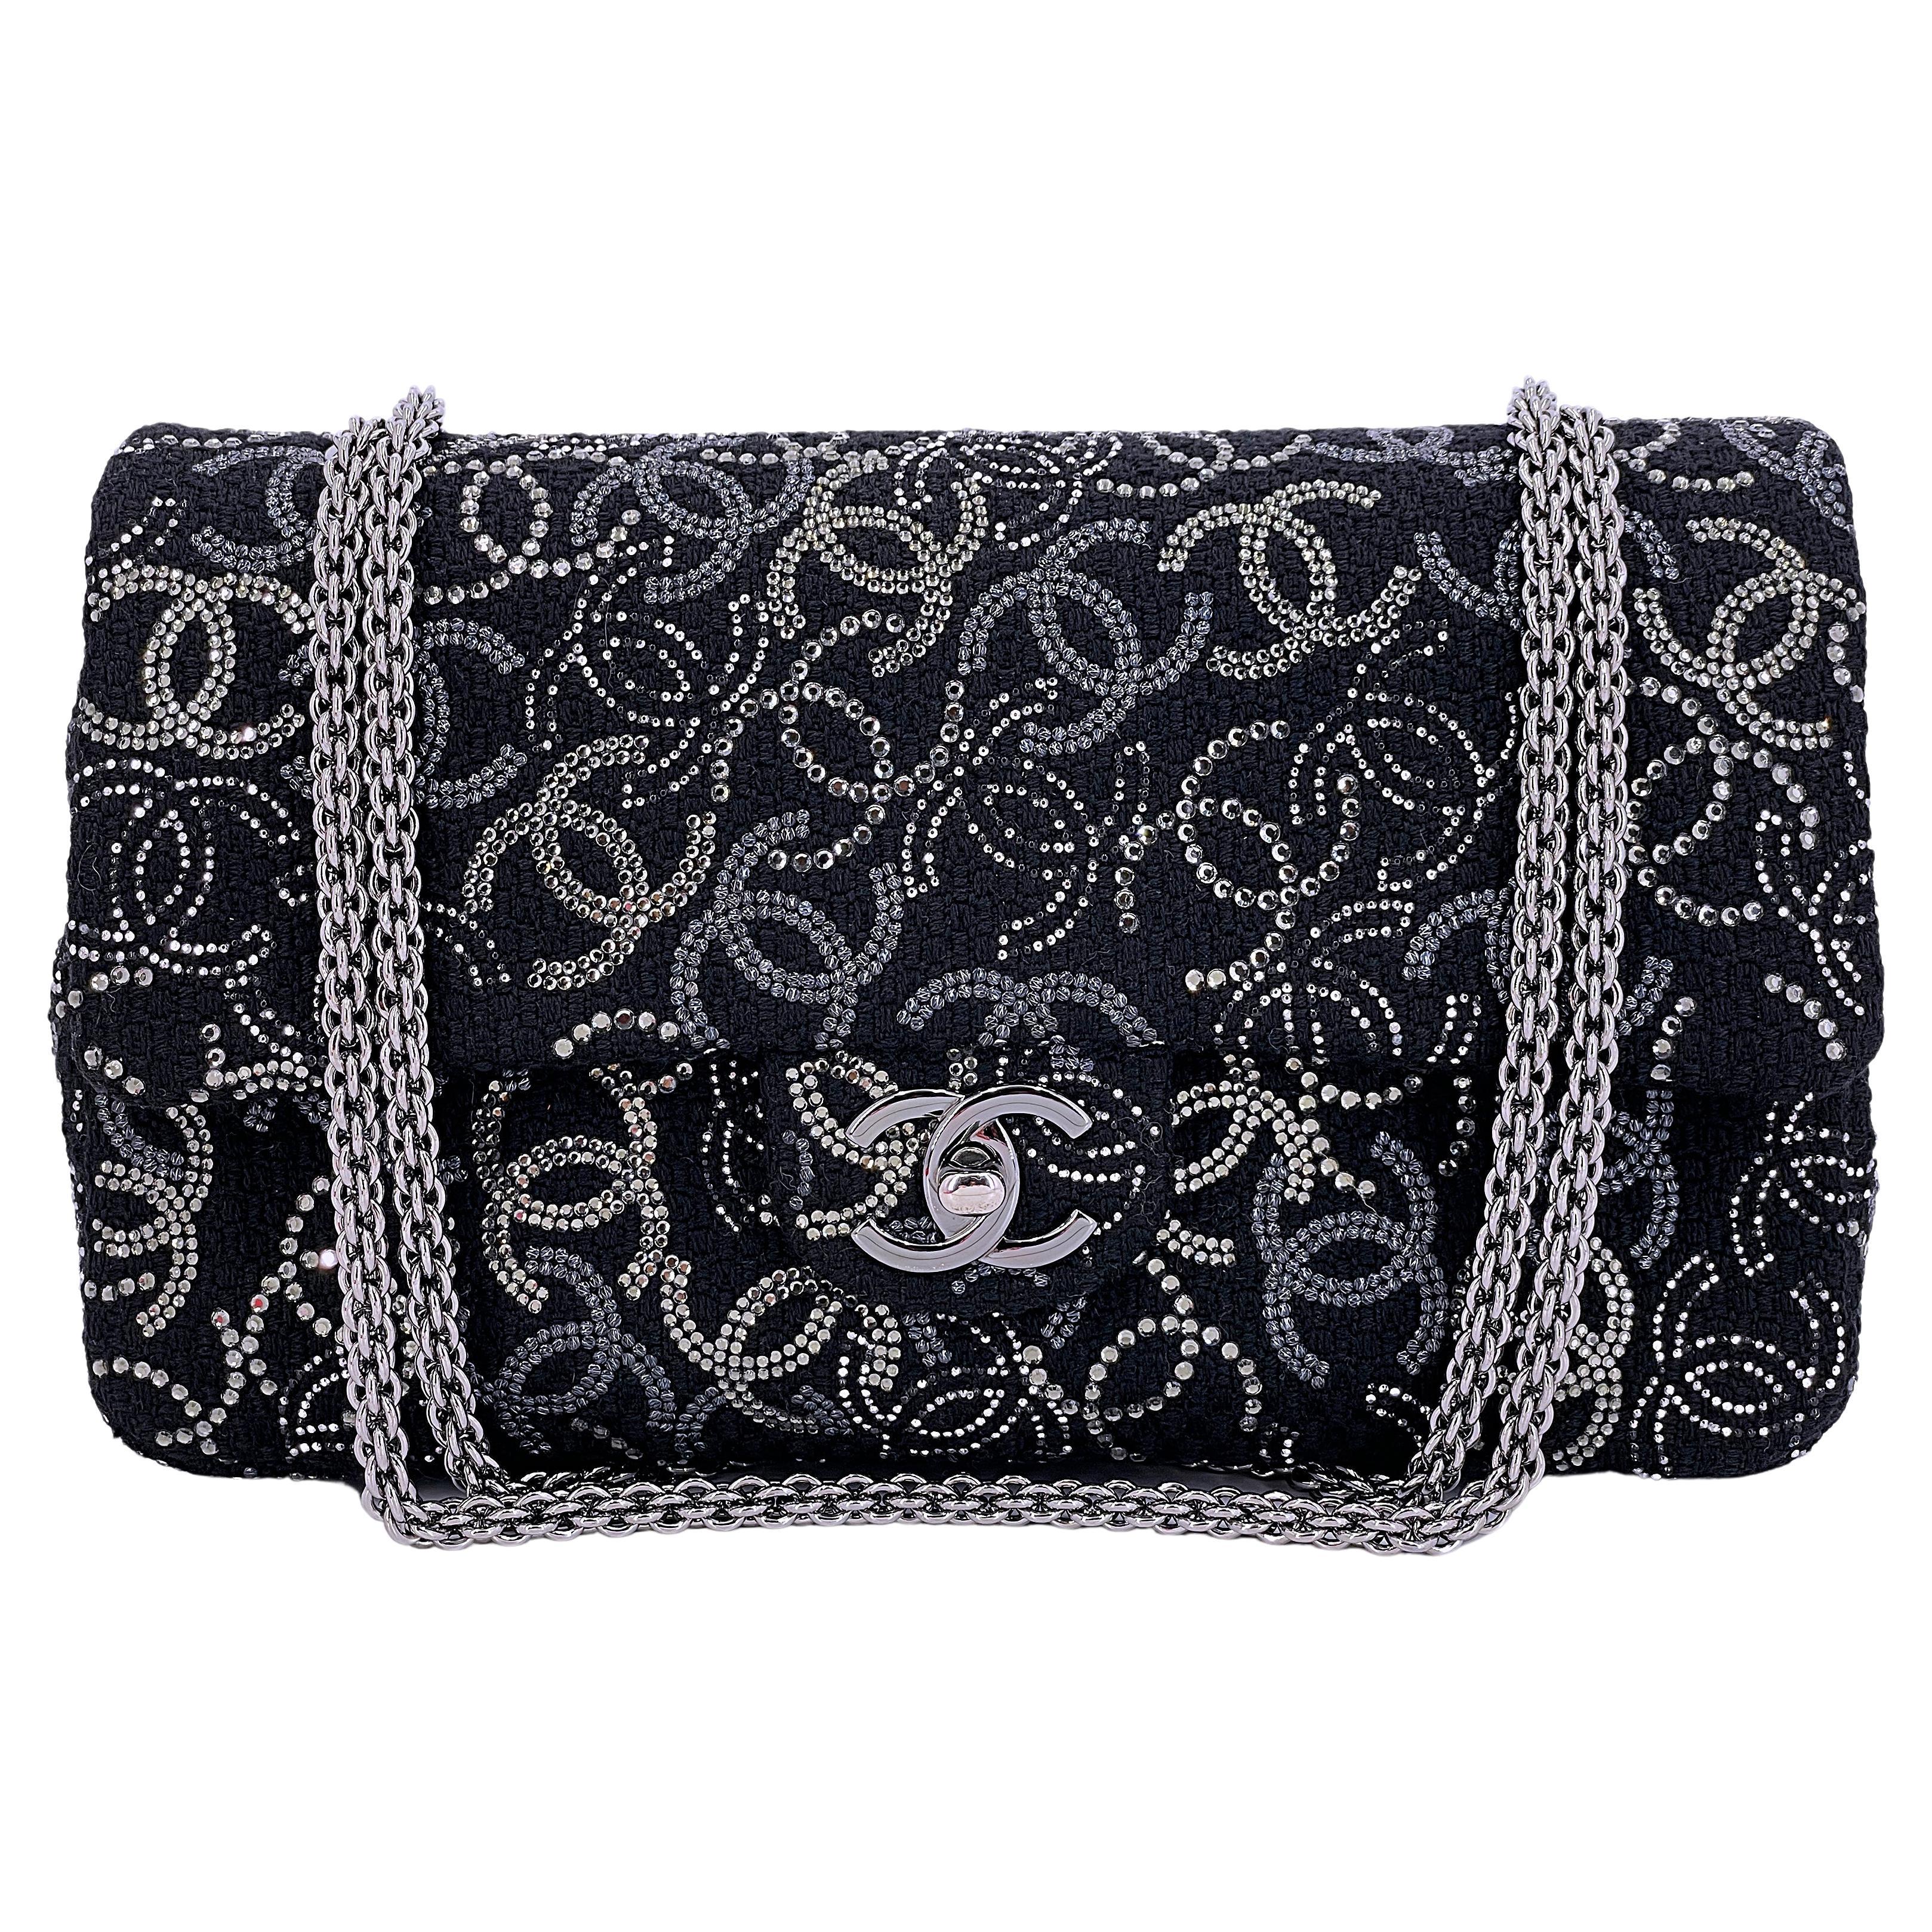 Chanel 2010 Black Paris-Shanghai Pudong Medium Classic Double Flap Bag 67299 For Sale